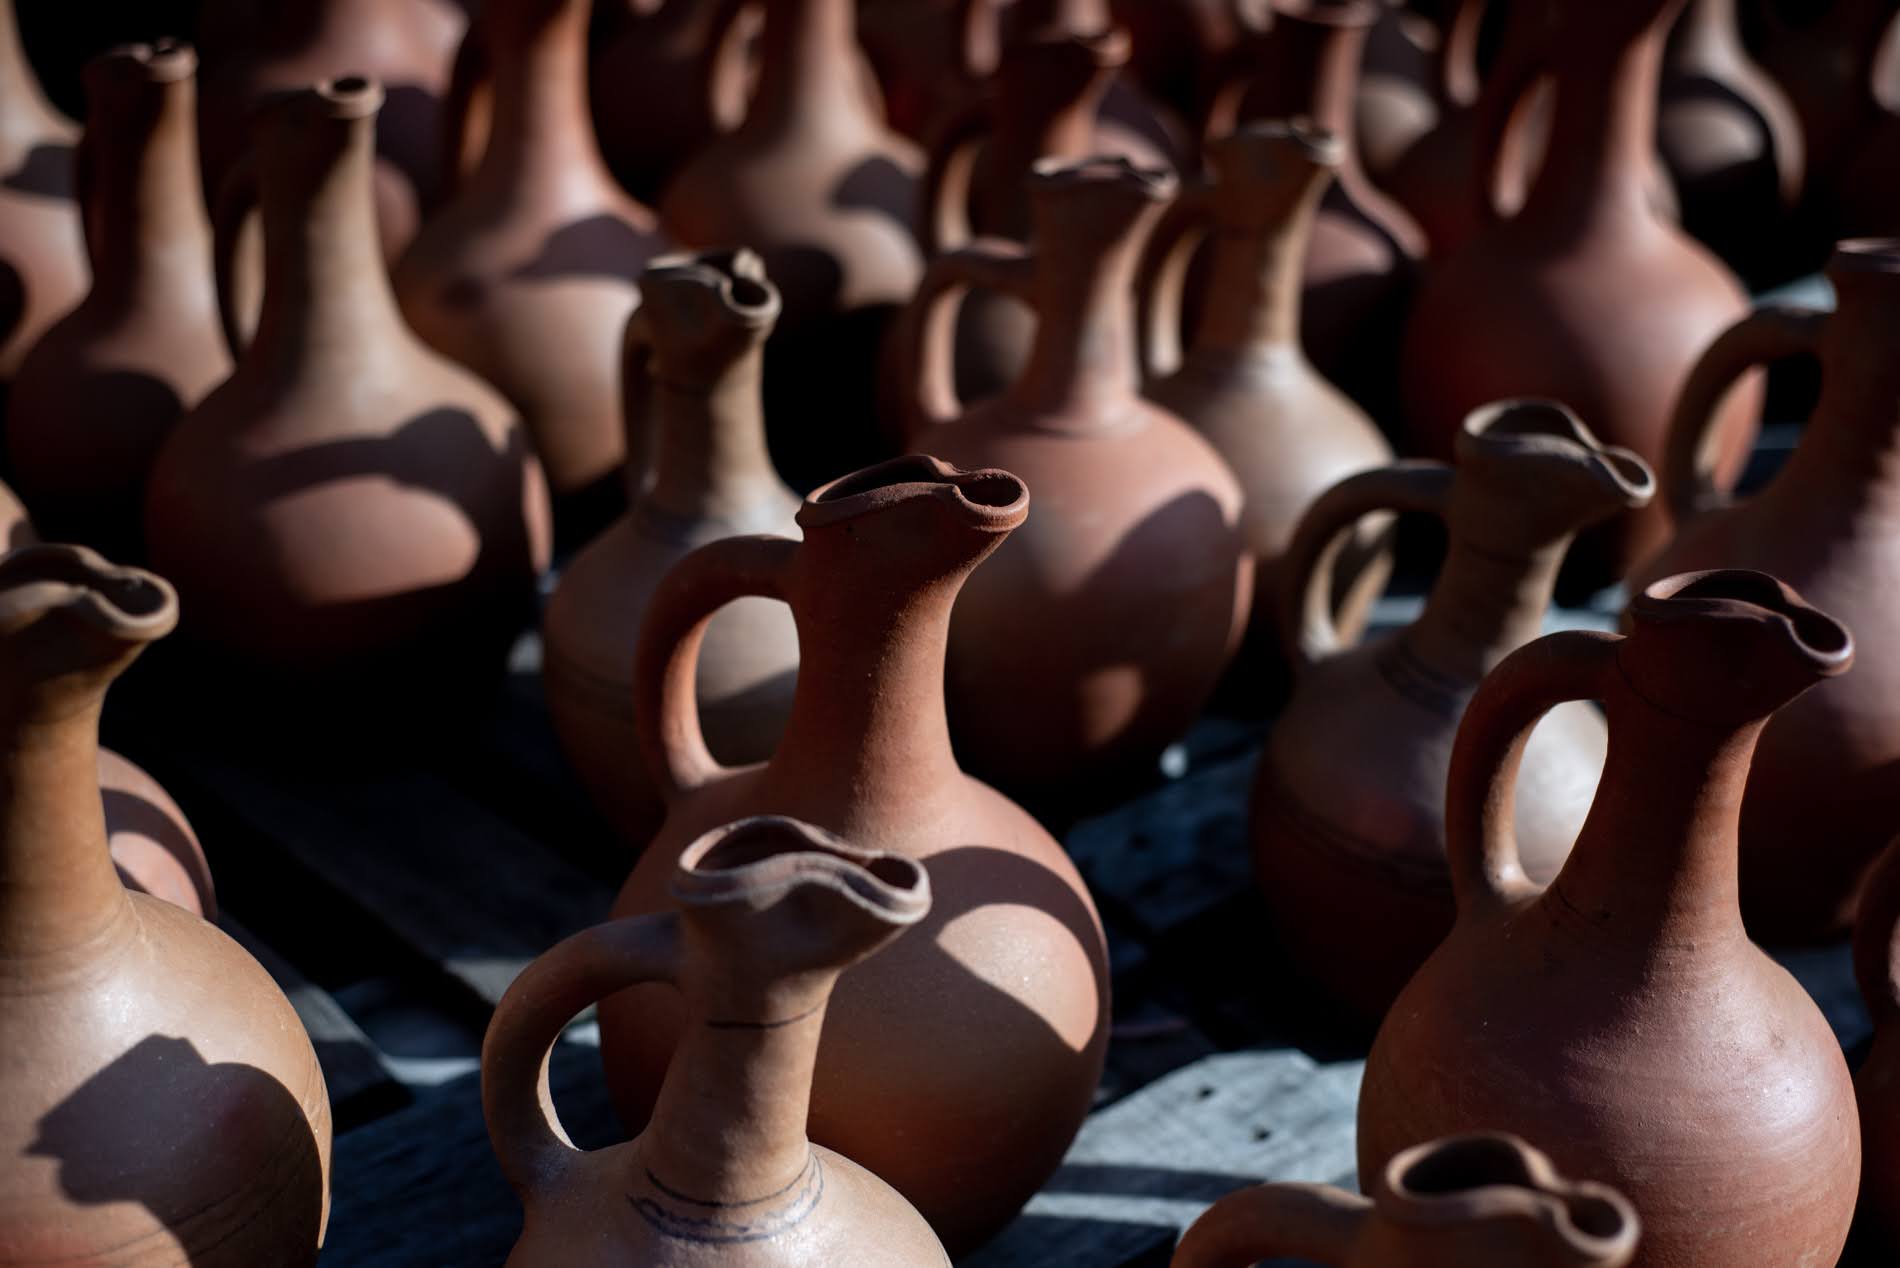 Shrosha is historically famous for it's pottery. Tamuna Chkareuli/OC Media.
